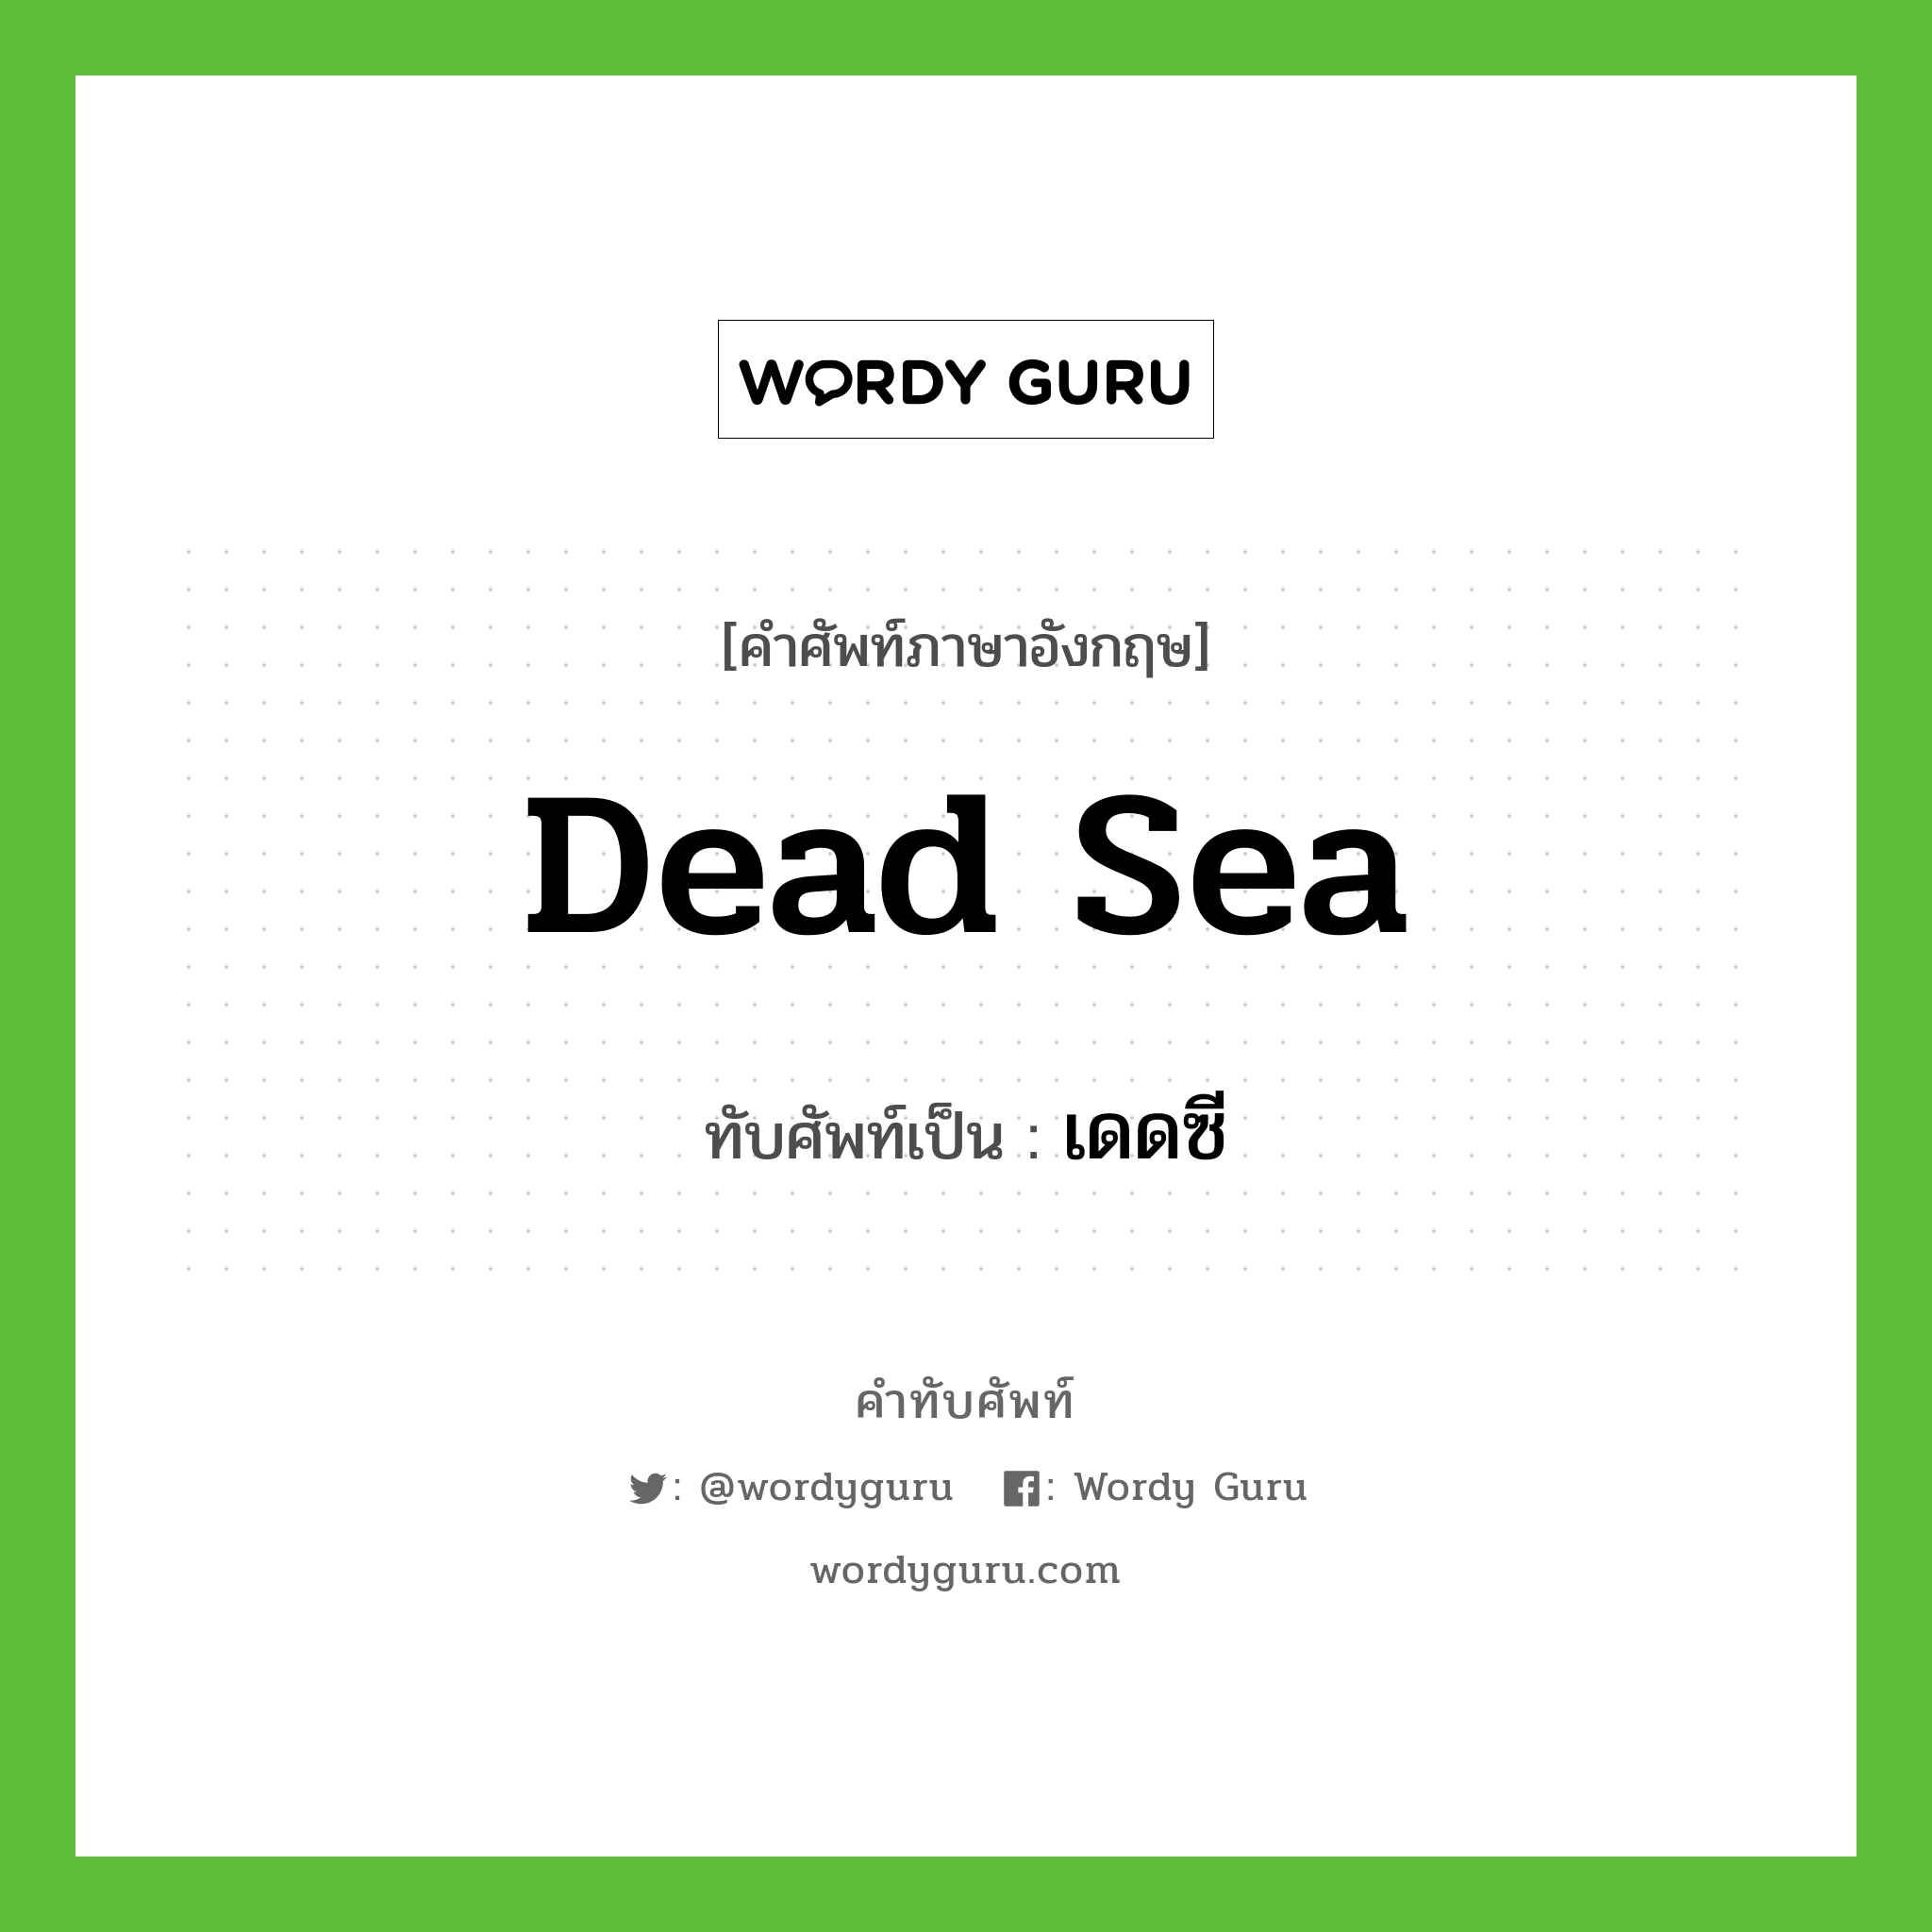 เดดซี เขียนอย่างไร?, คำศัพท์ภาษาอังกฤษ เดดซี ทับศัพท์เป็น Dead Sea